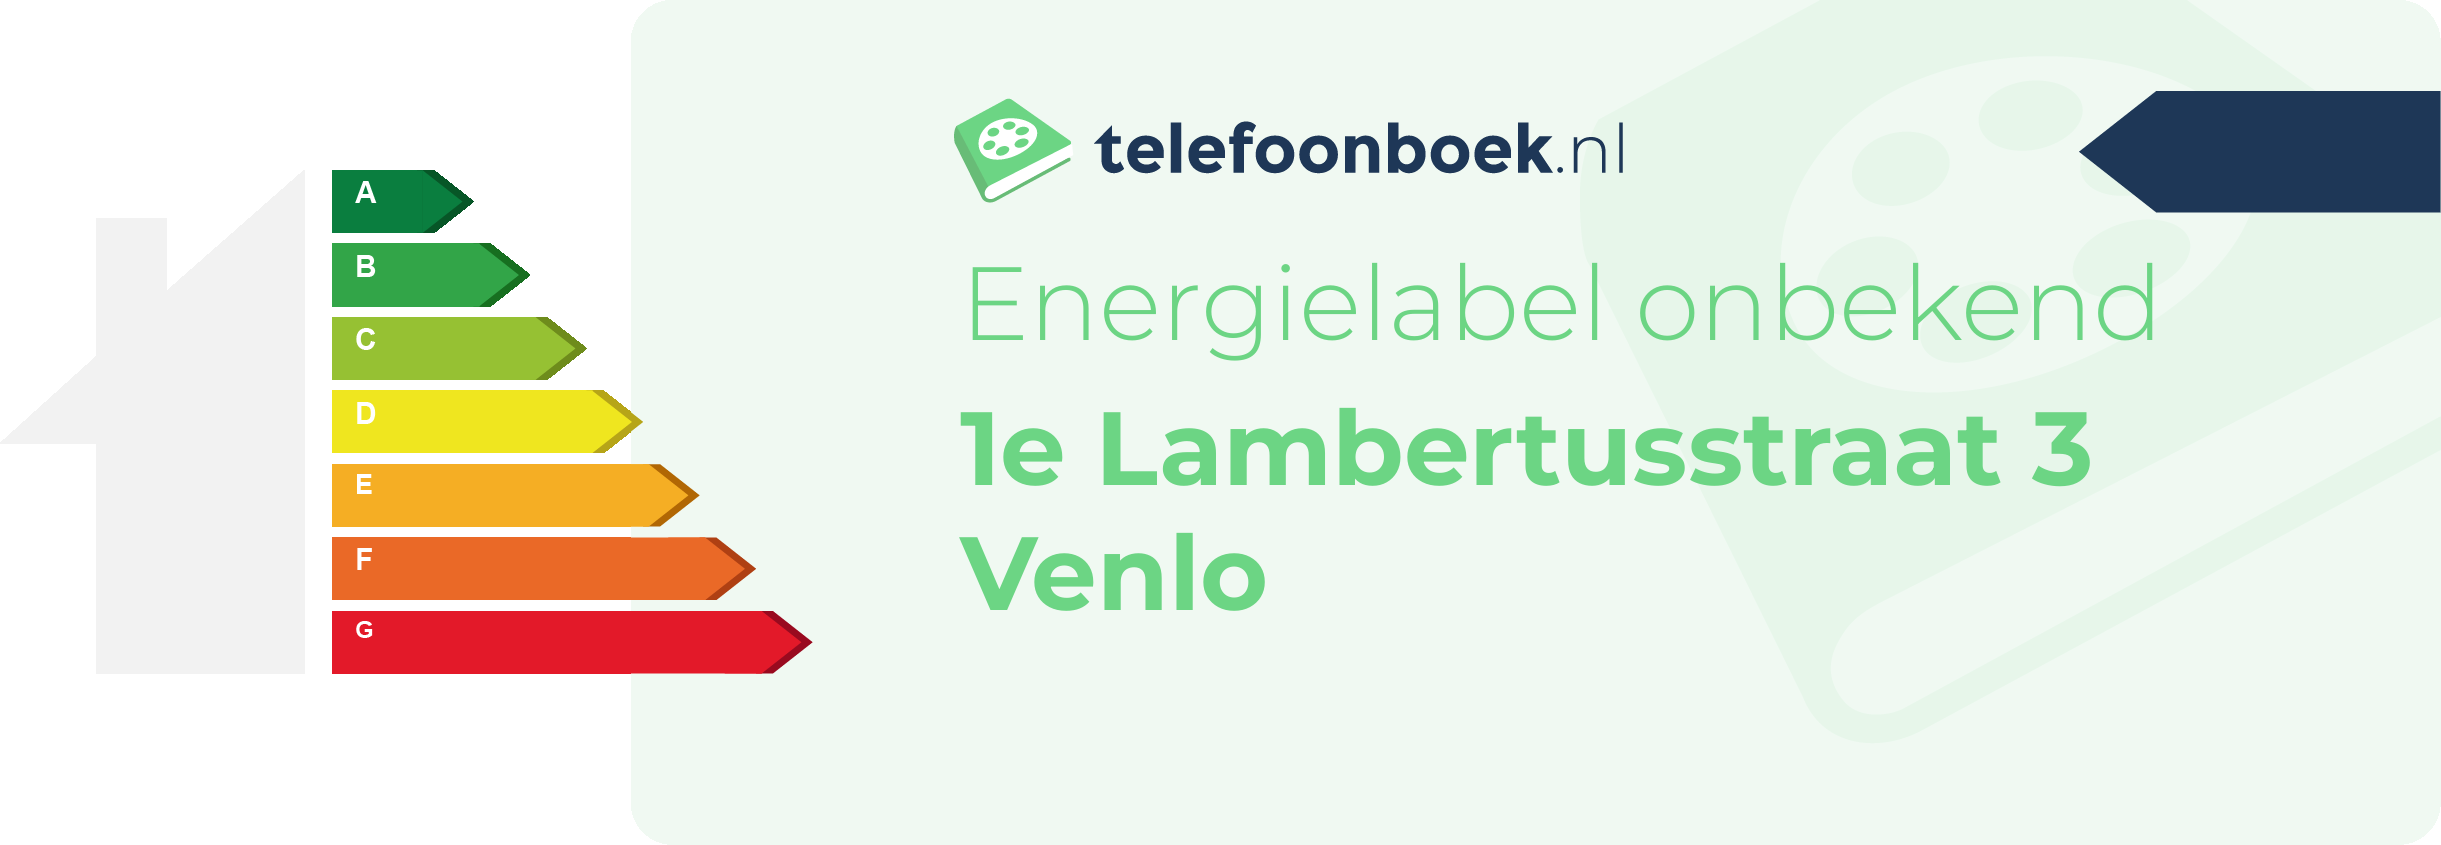 Energielabel 1e Lambertusstraat 3 Venlo